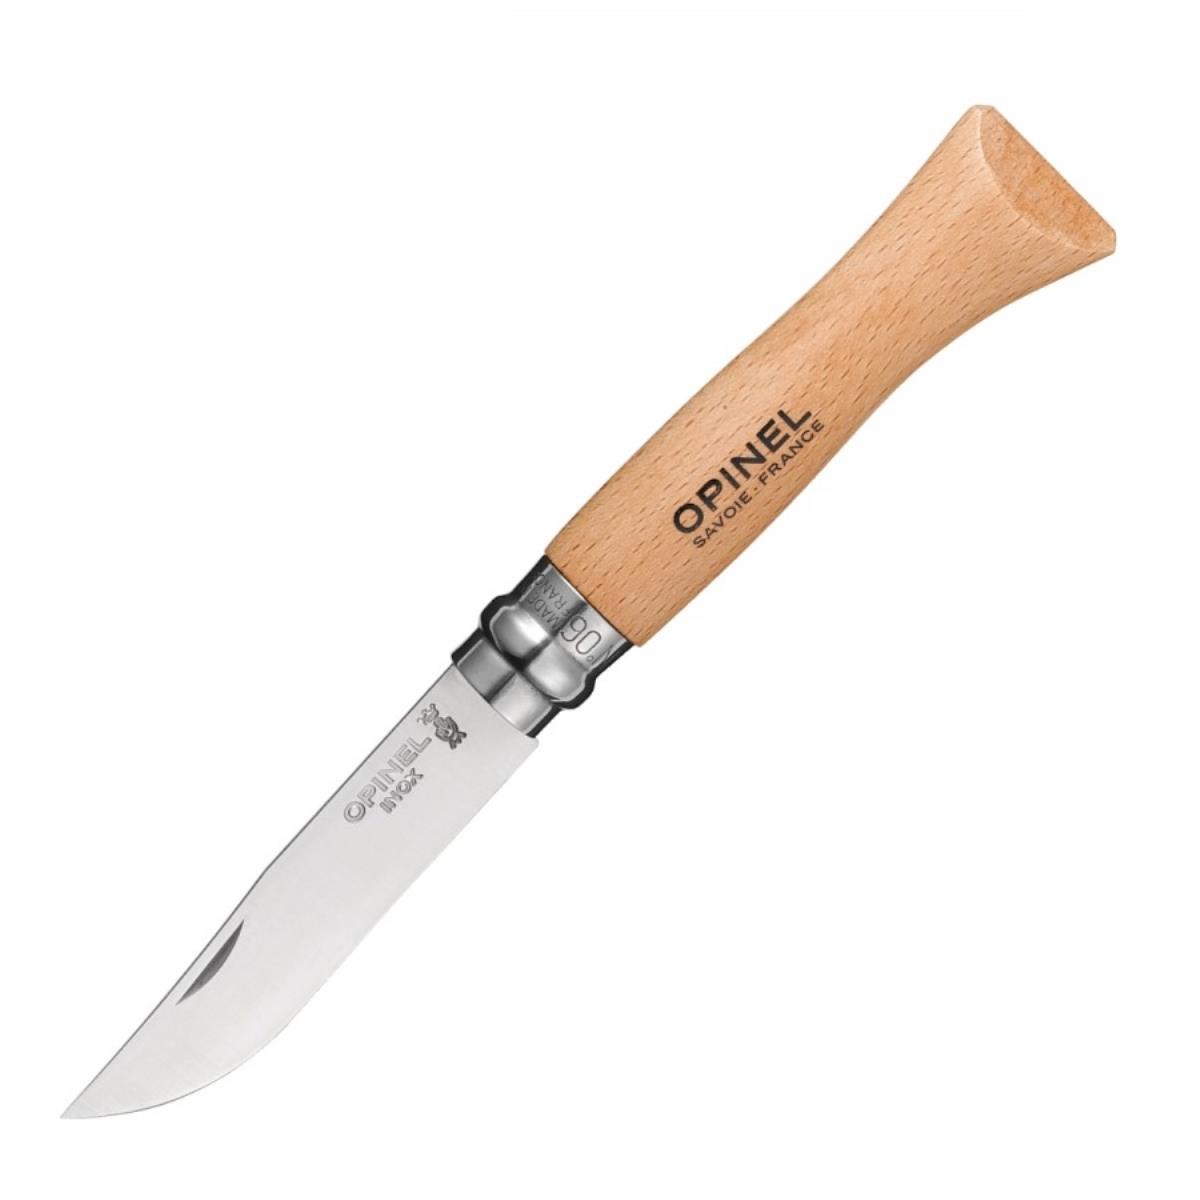 Нож №6 VRI Tradition Inox (нерж.сталь, рукоять бук, длина клинка 7 см) (1230607) OPINEL складной нож boker sherman damast сталь дамаск рукоять микарта